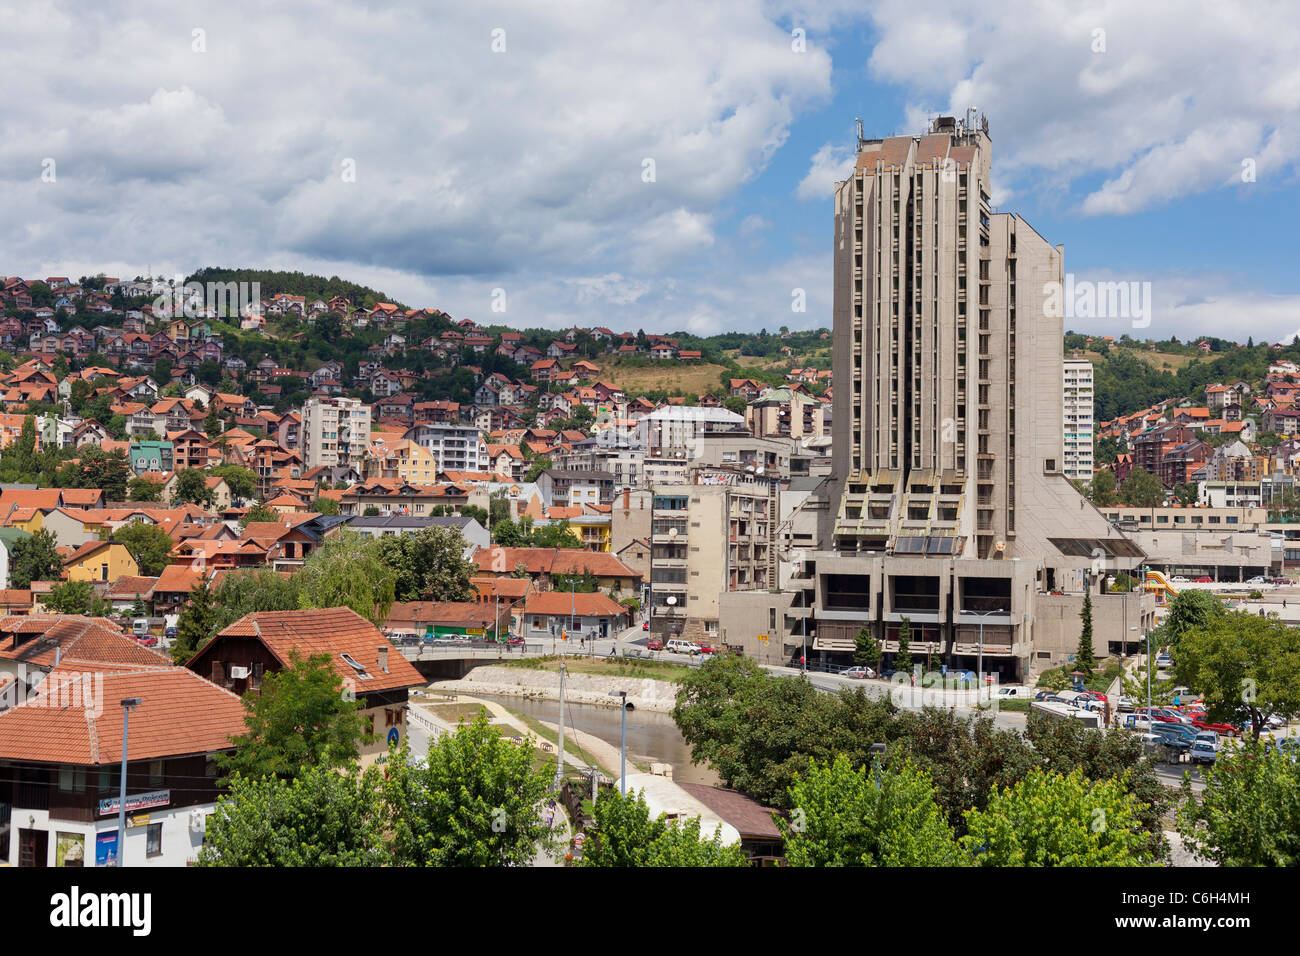 Panorama od Uzice town in Serbia Stock Photo